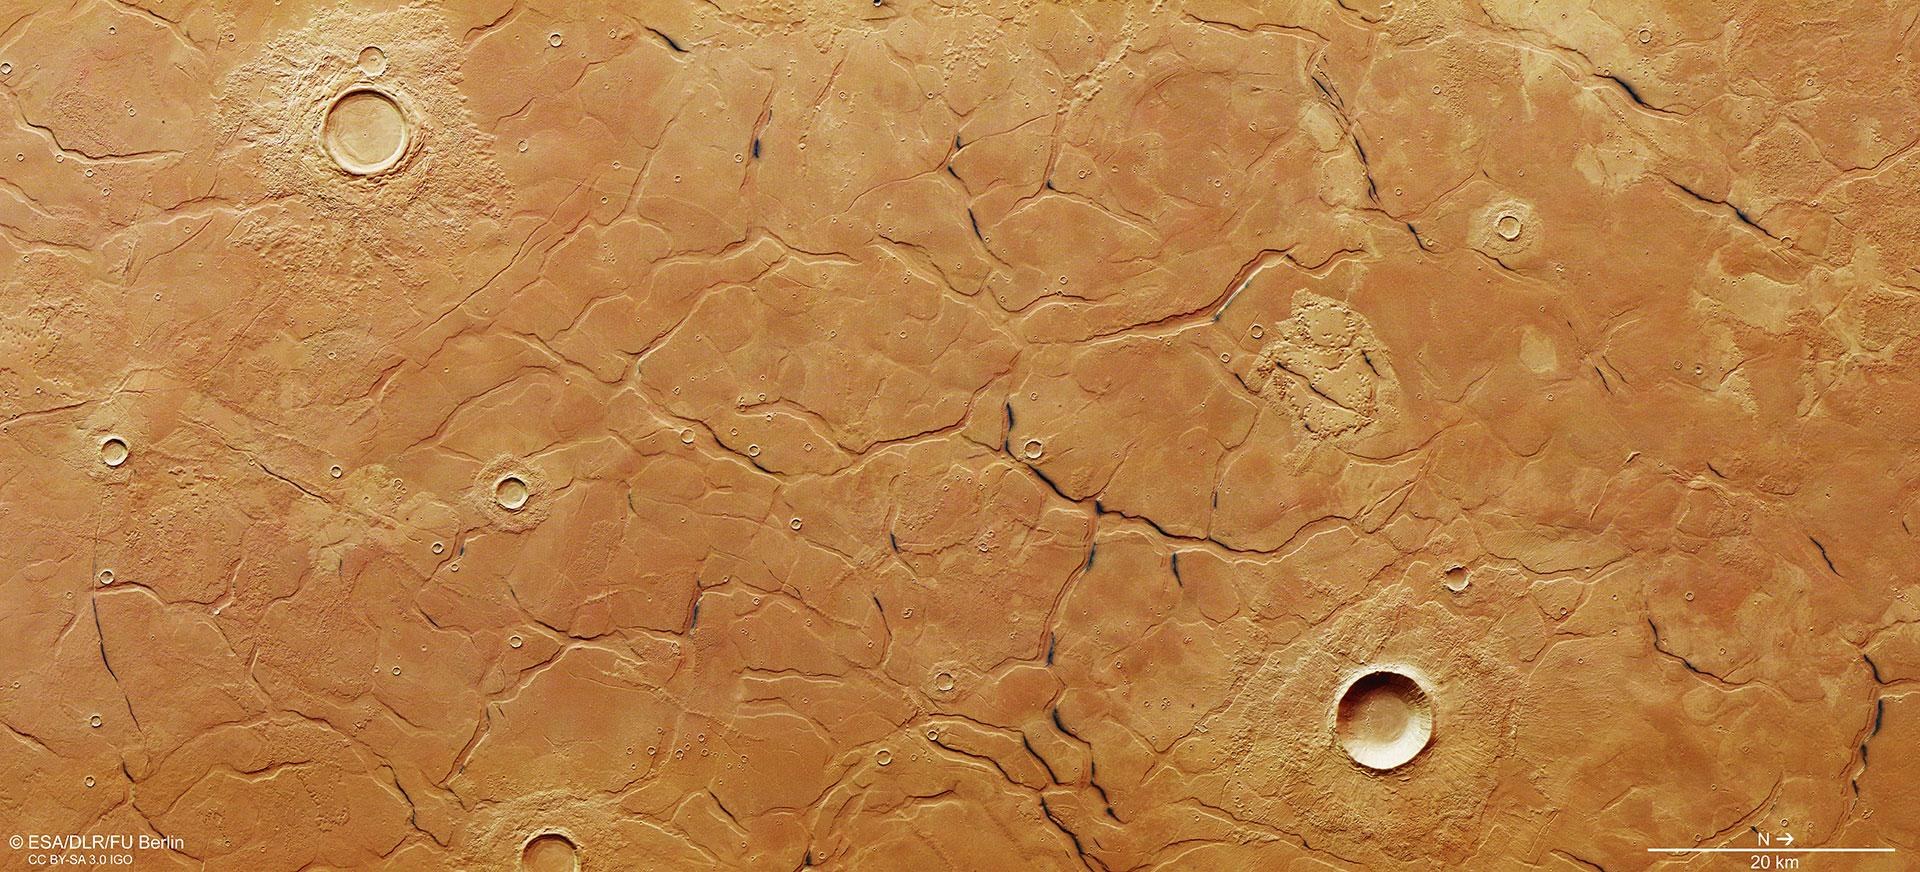 Blick auf das Bruchsystem im Einschlagbecken Utopia Planitia